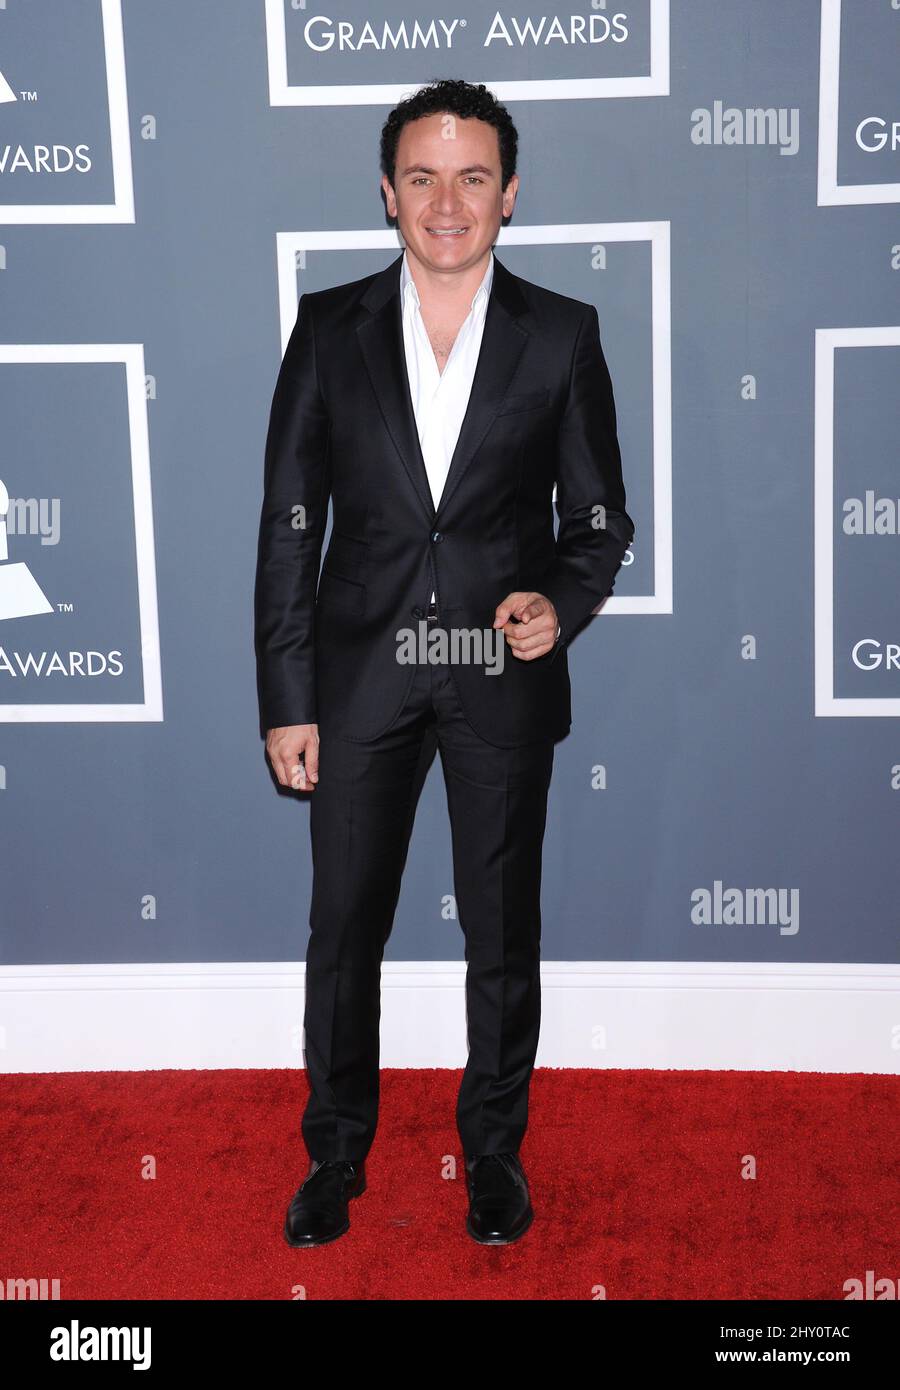 Fonseca arrive pour les Grammy Awards annuels 55th qui se tiennent au Staples Center de Los Angeles. Banque D'Images